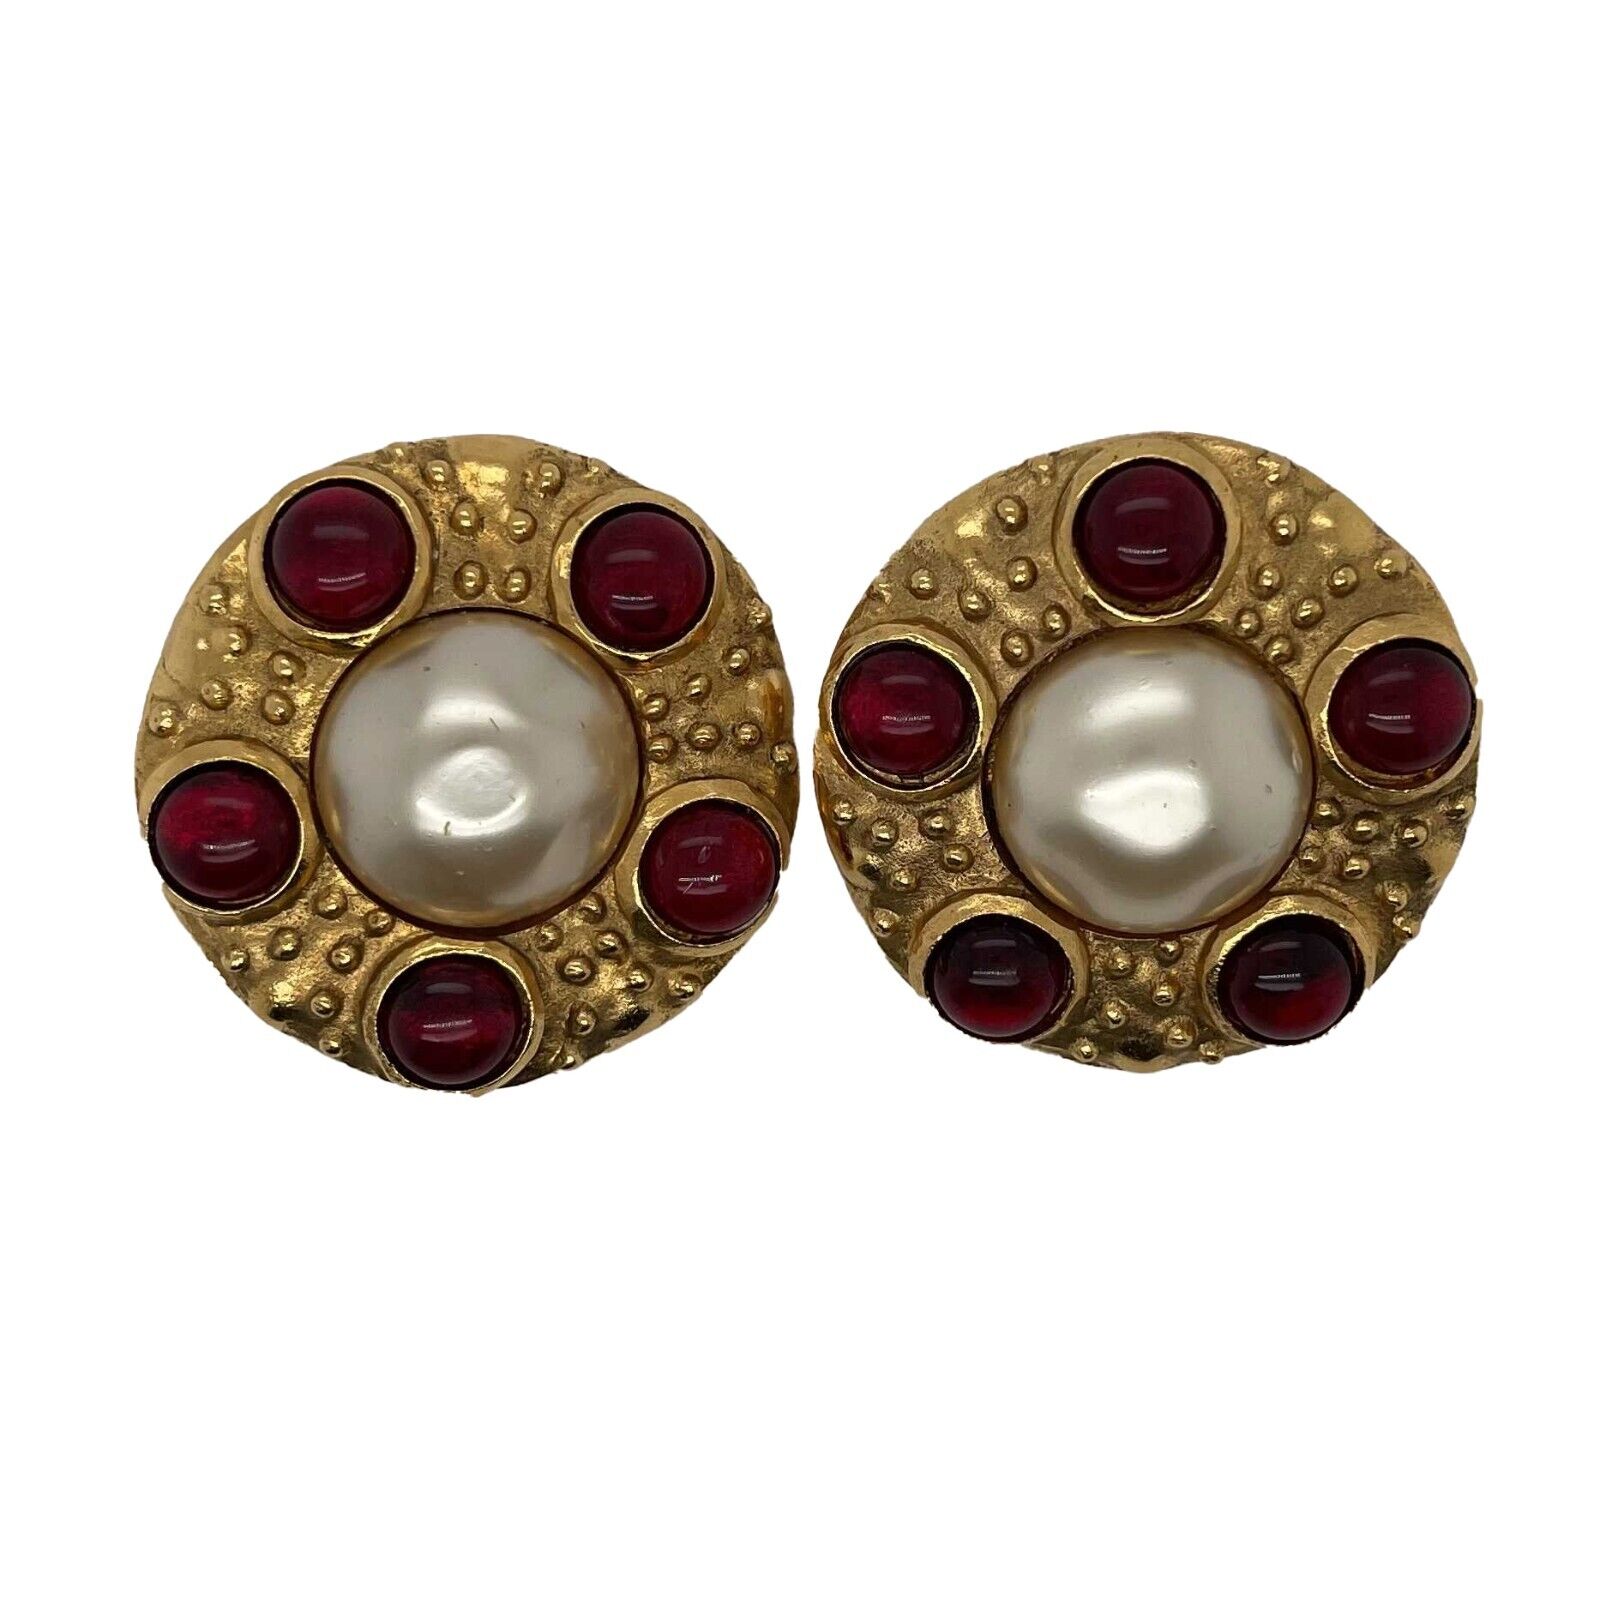 Chanel gripoix pearl earrings - Gem